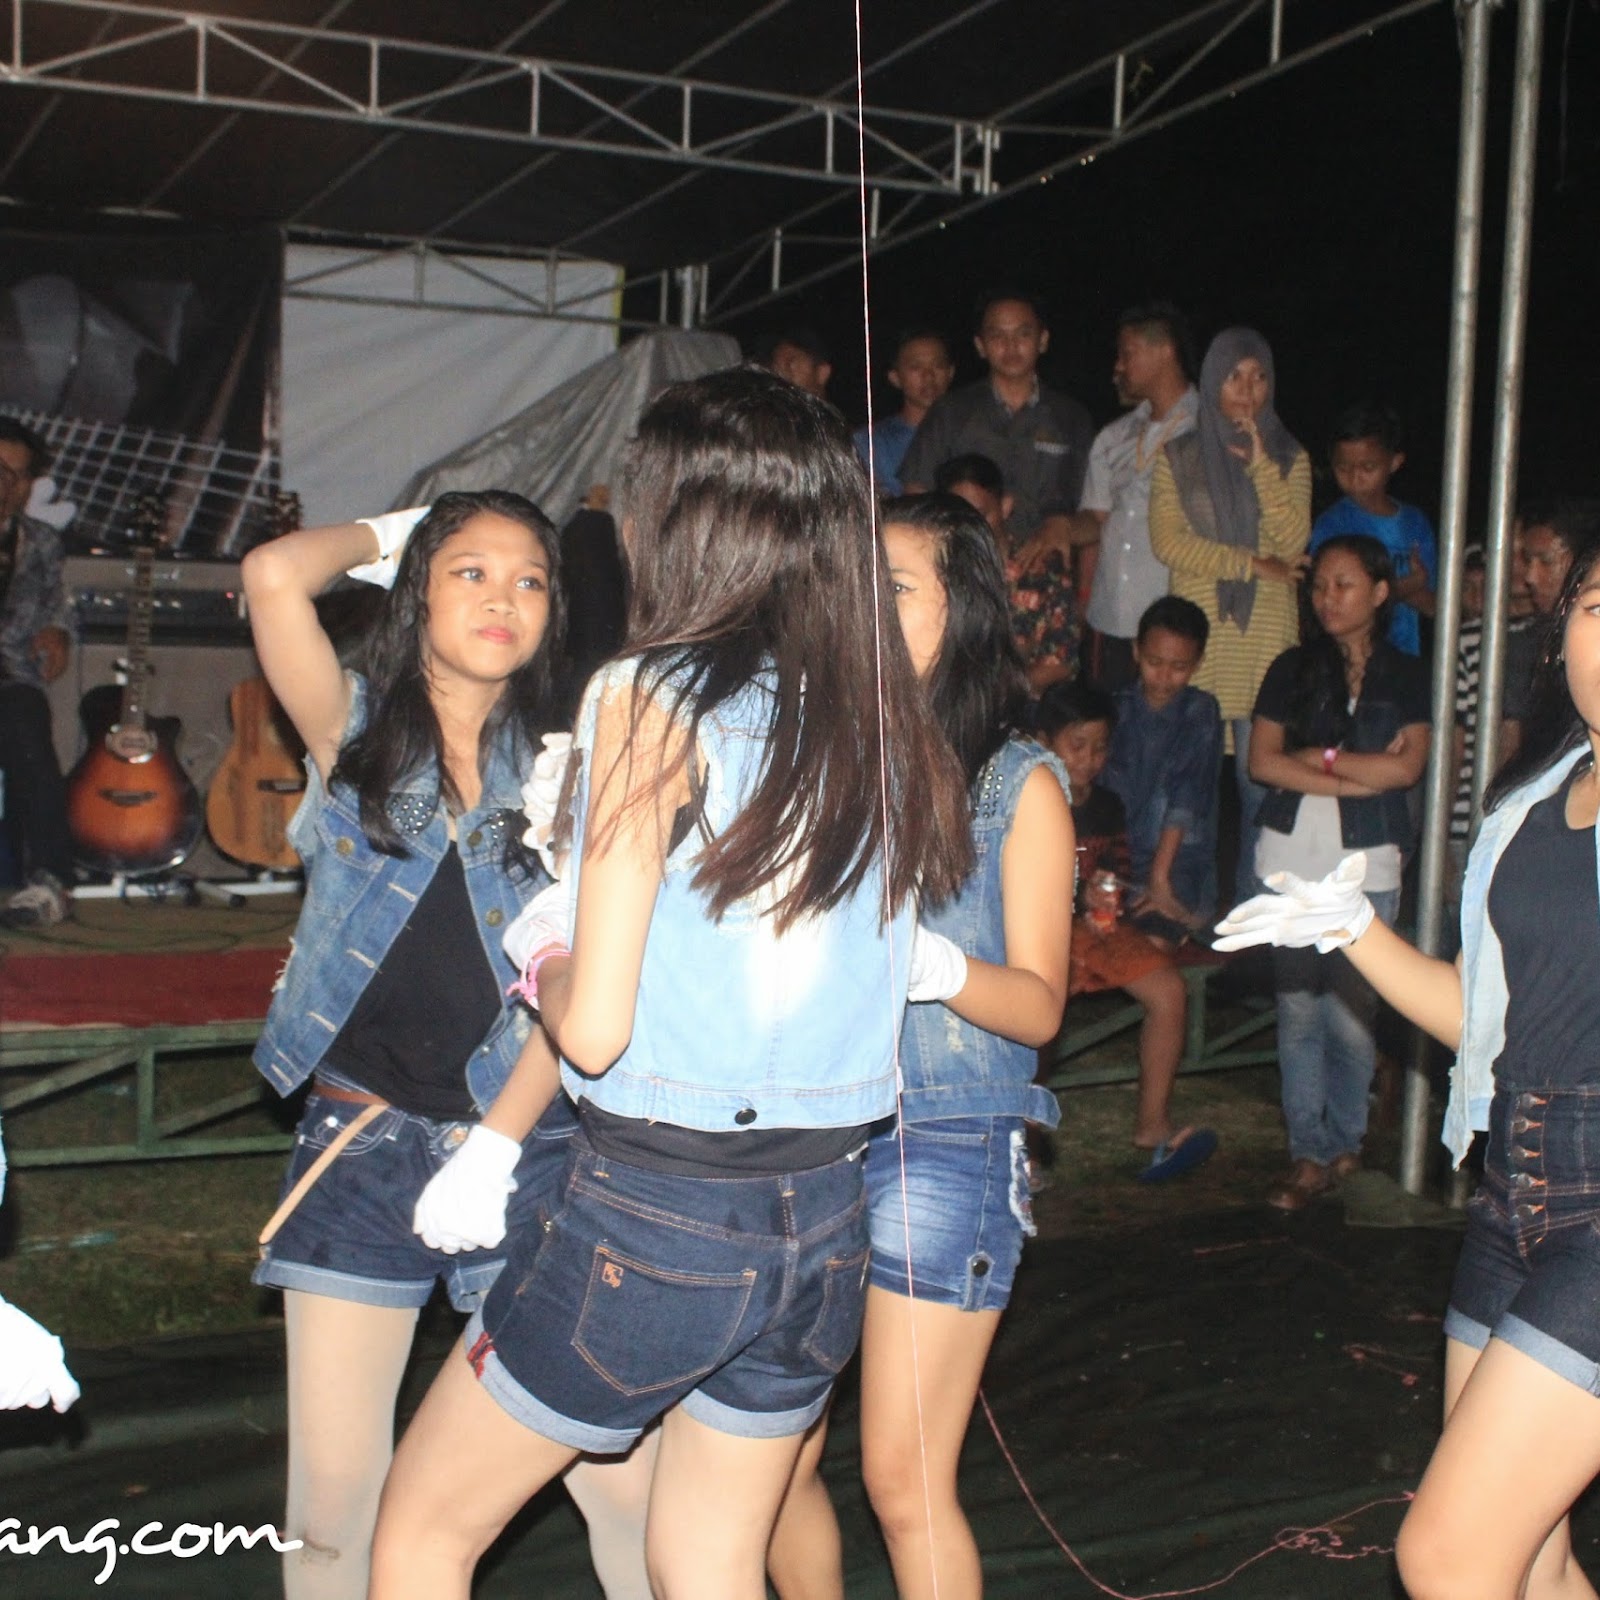 The Five Dance In Action at Kedai Ceria Kota Serang